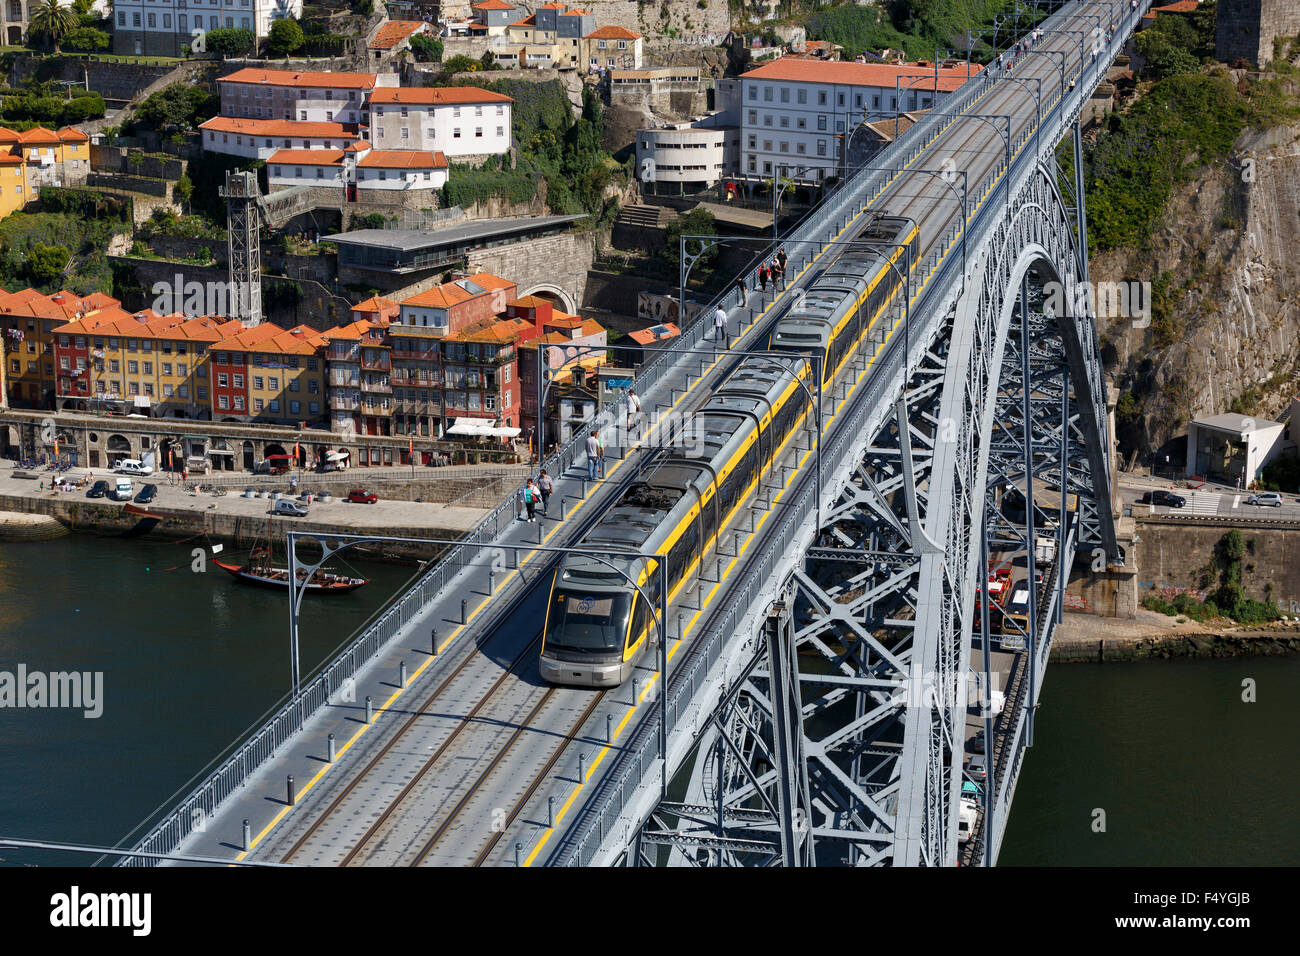 Flexity Outlook Eurotram train du métro de Porto traversant le pont à deux niveaux de Ponte Luis 1 sur le fleuve Douro Portugal Banque D'Images